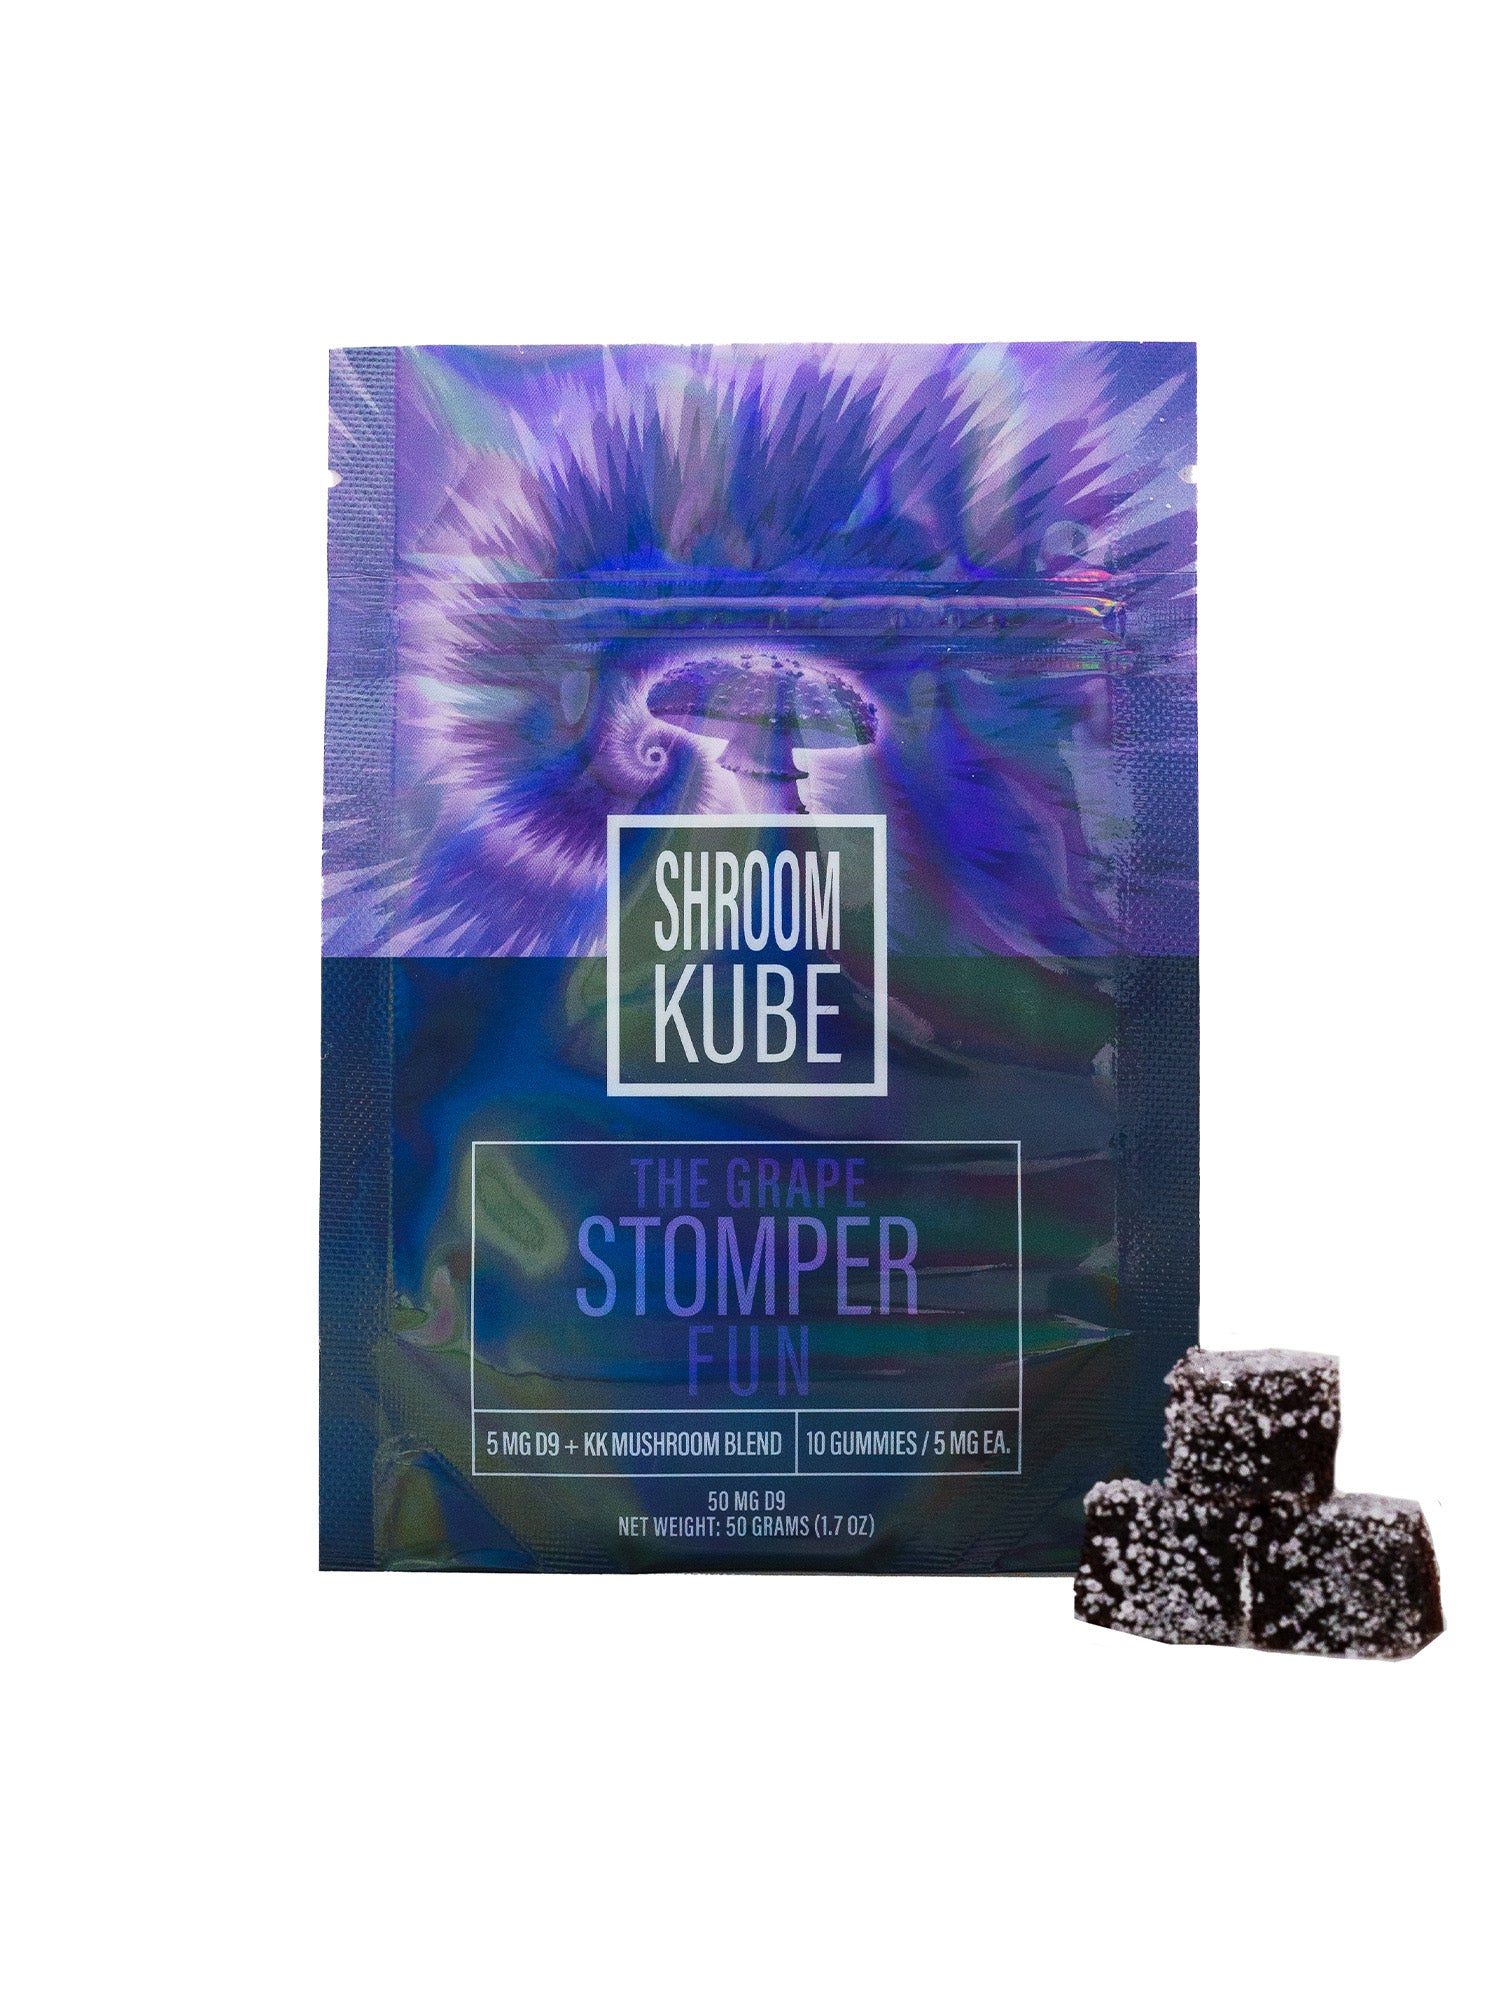 Shroom Kube - Grape Stomper - 10 Pack Bag (Functional Mushrooms + D9 THC)